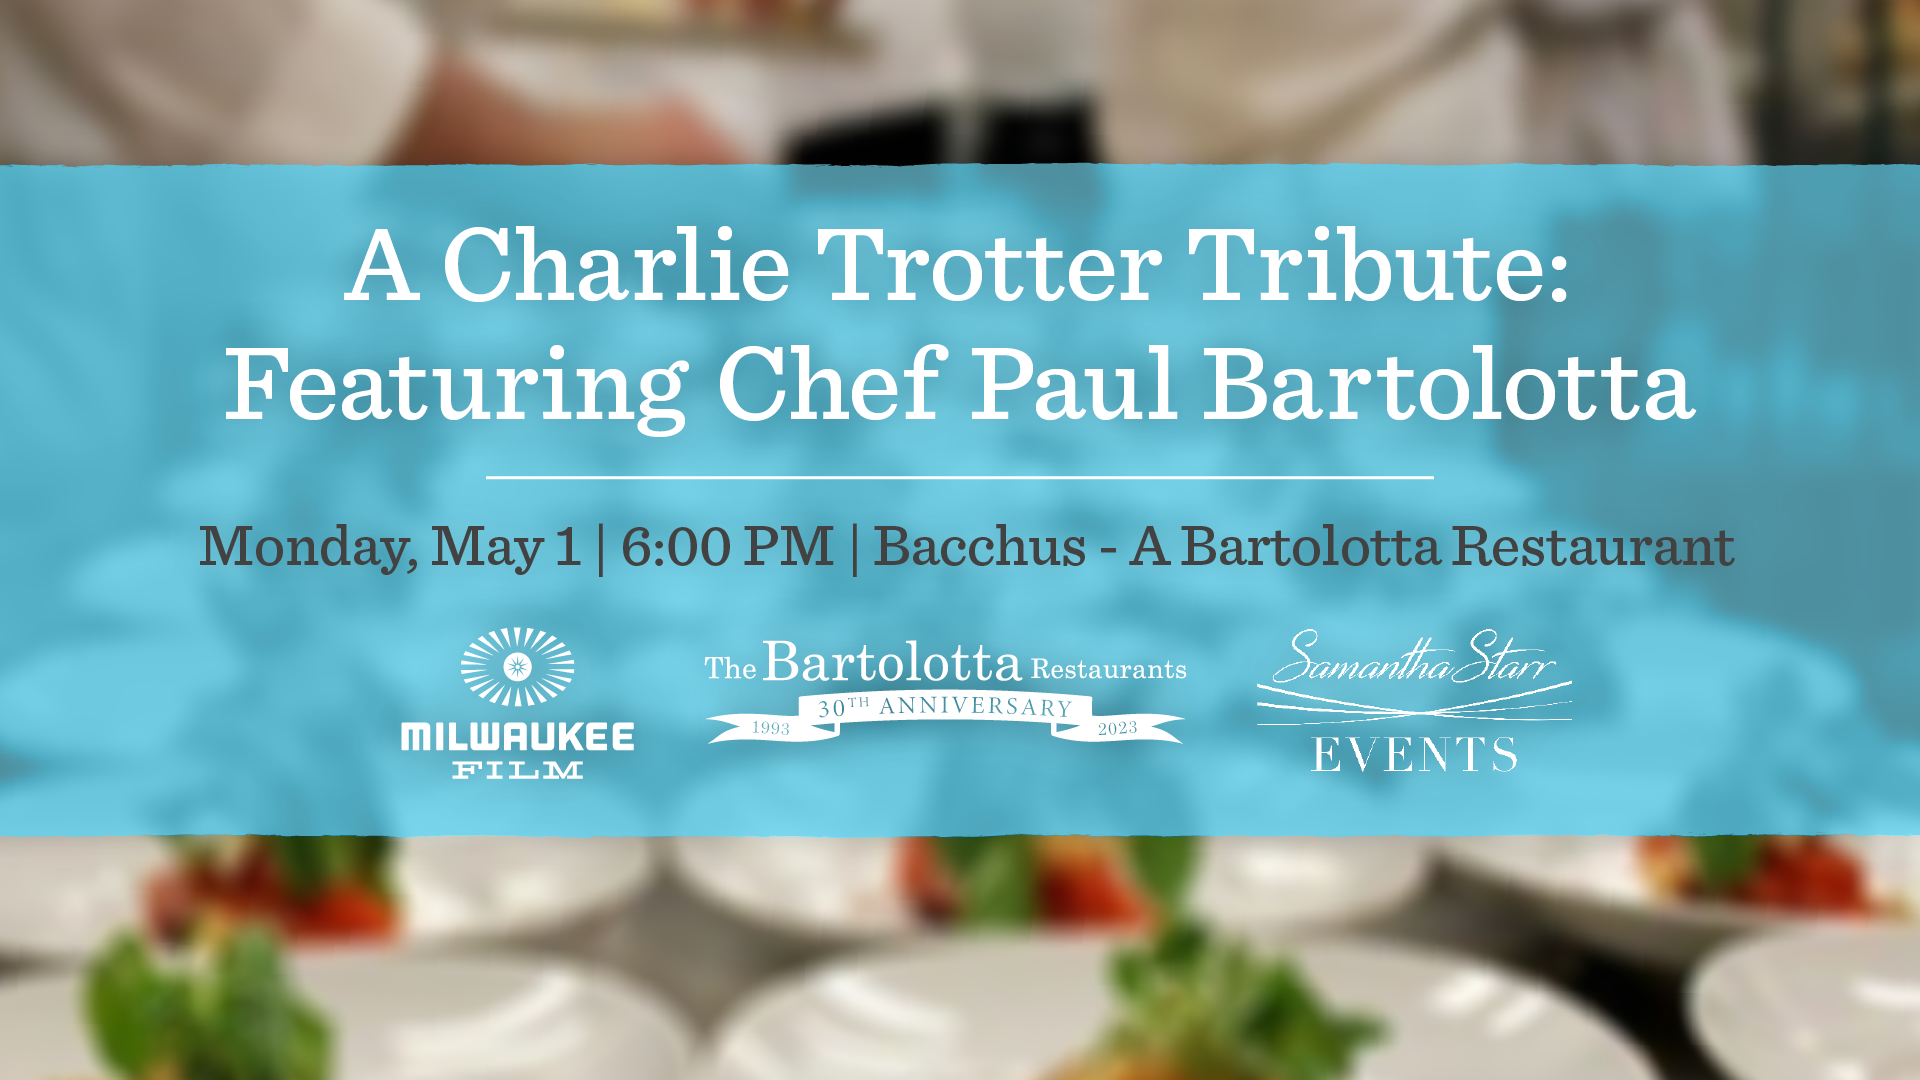 密尔沃基电影公司将于5月1日星期一举办纪念芝加哥革命厨师查理·特罗特的晚宴，邀请两届詹姆斯·比尔德冠军厨师保罗·巴托洛塔在巴克斯巴托洛塔餐厅用餐